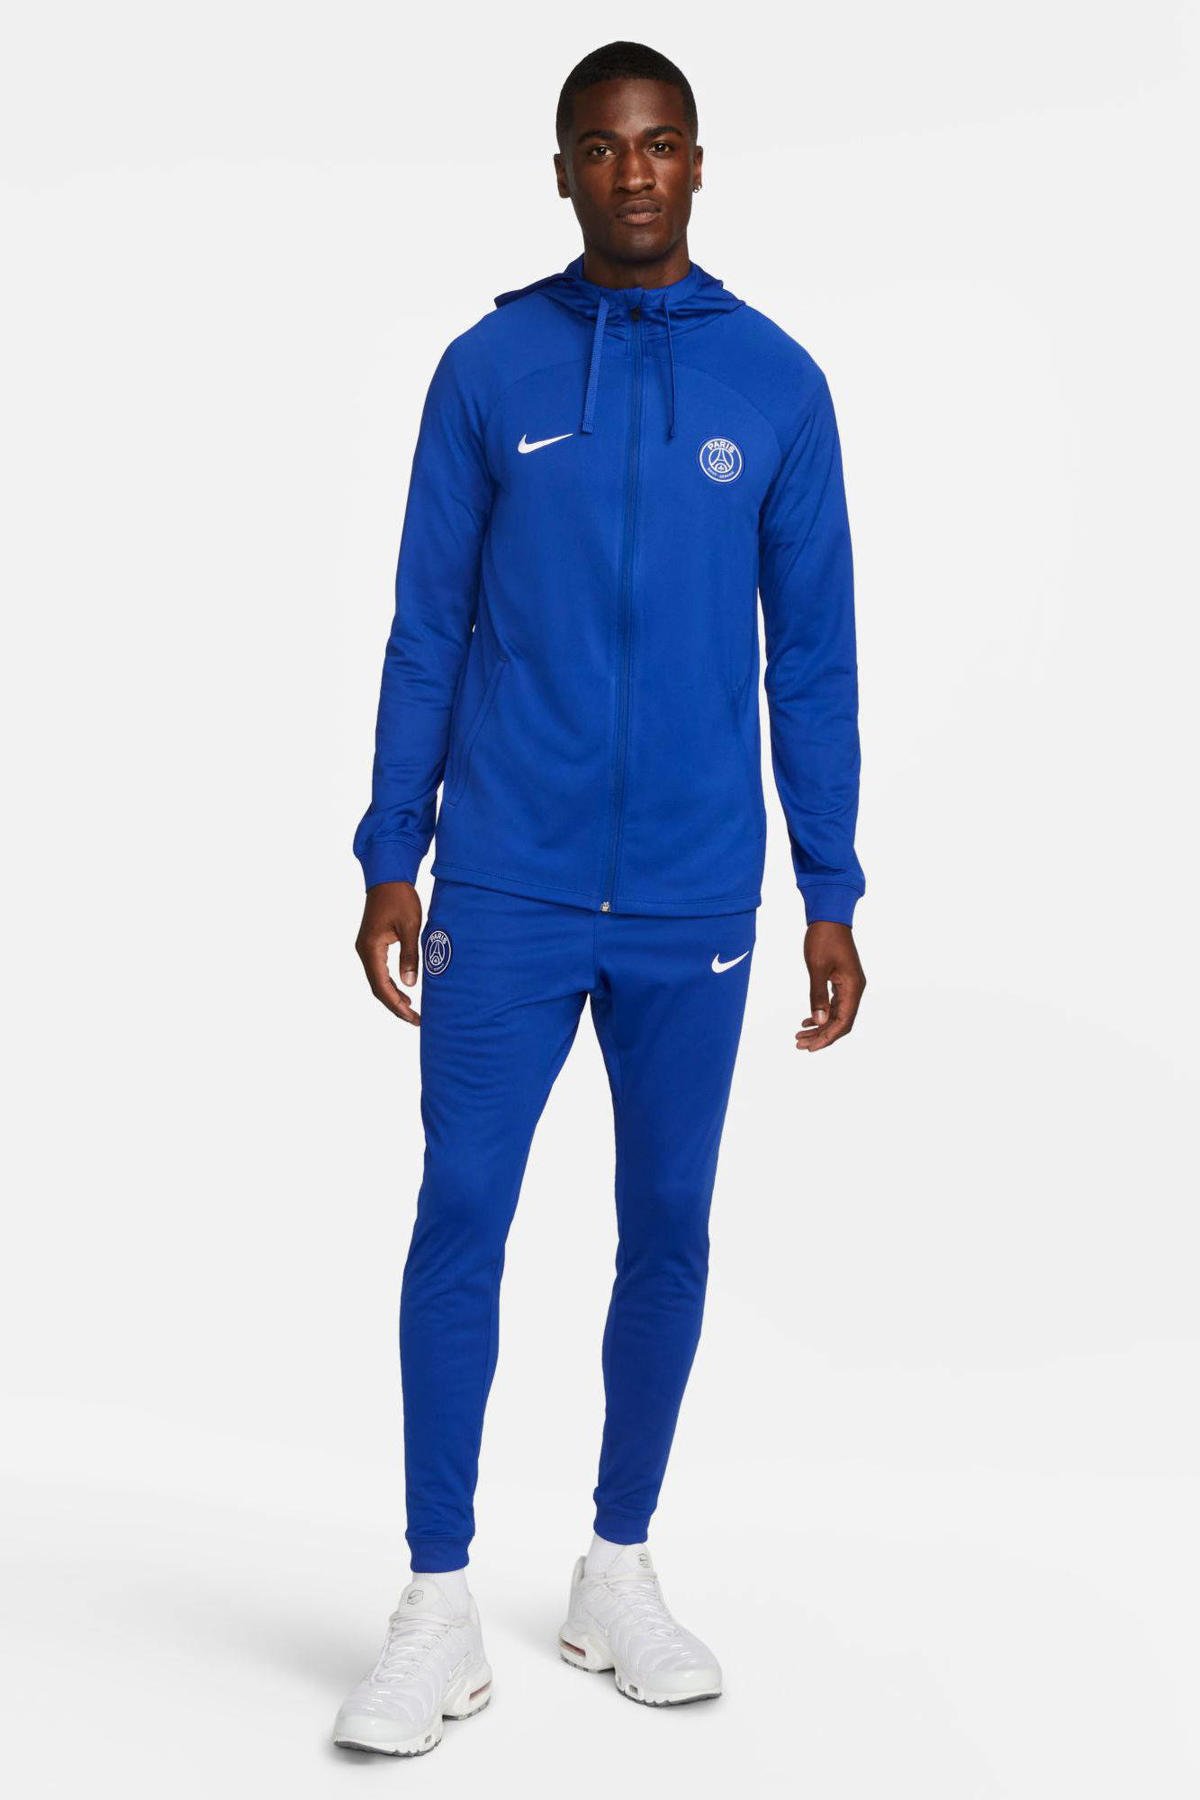 Monopoly Klooster toelage Nike Paris Saint Germain trainingspak blauw | wehkamp